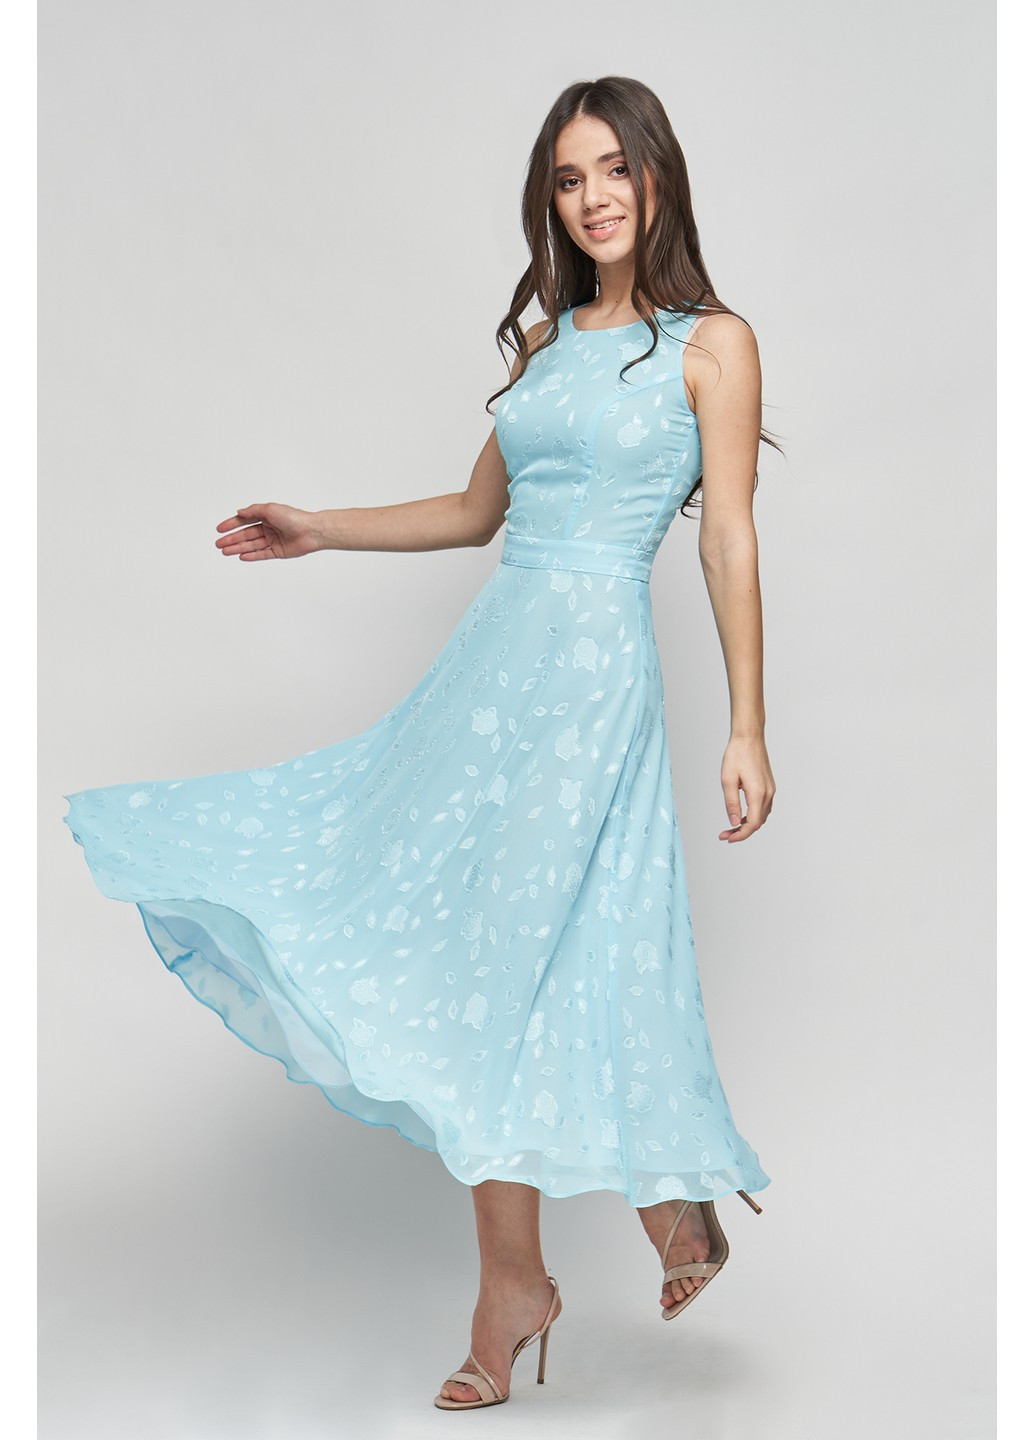 Голубое коктейльное платье венди клеш, с пышной юбкой BYURSE с цветочным принтом